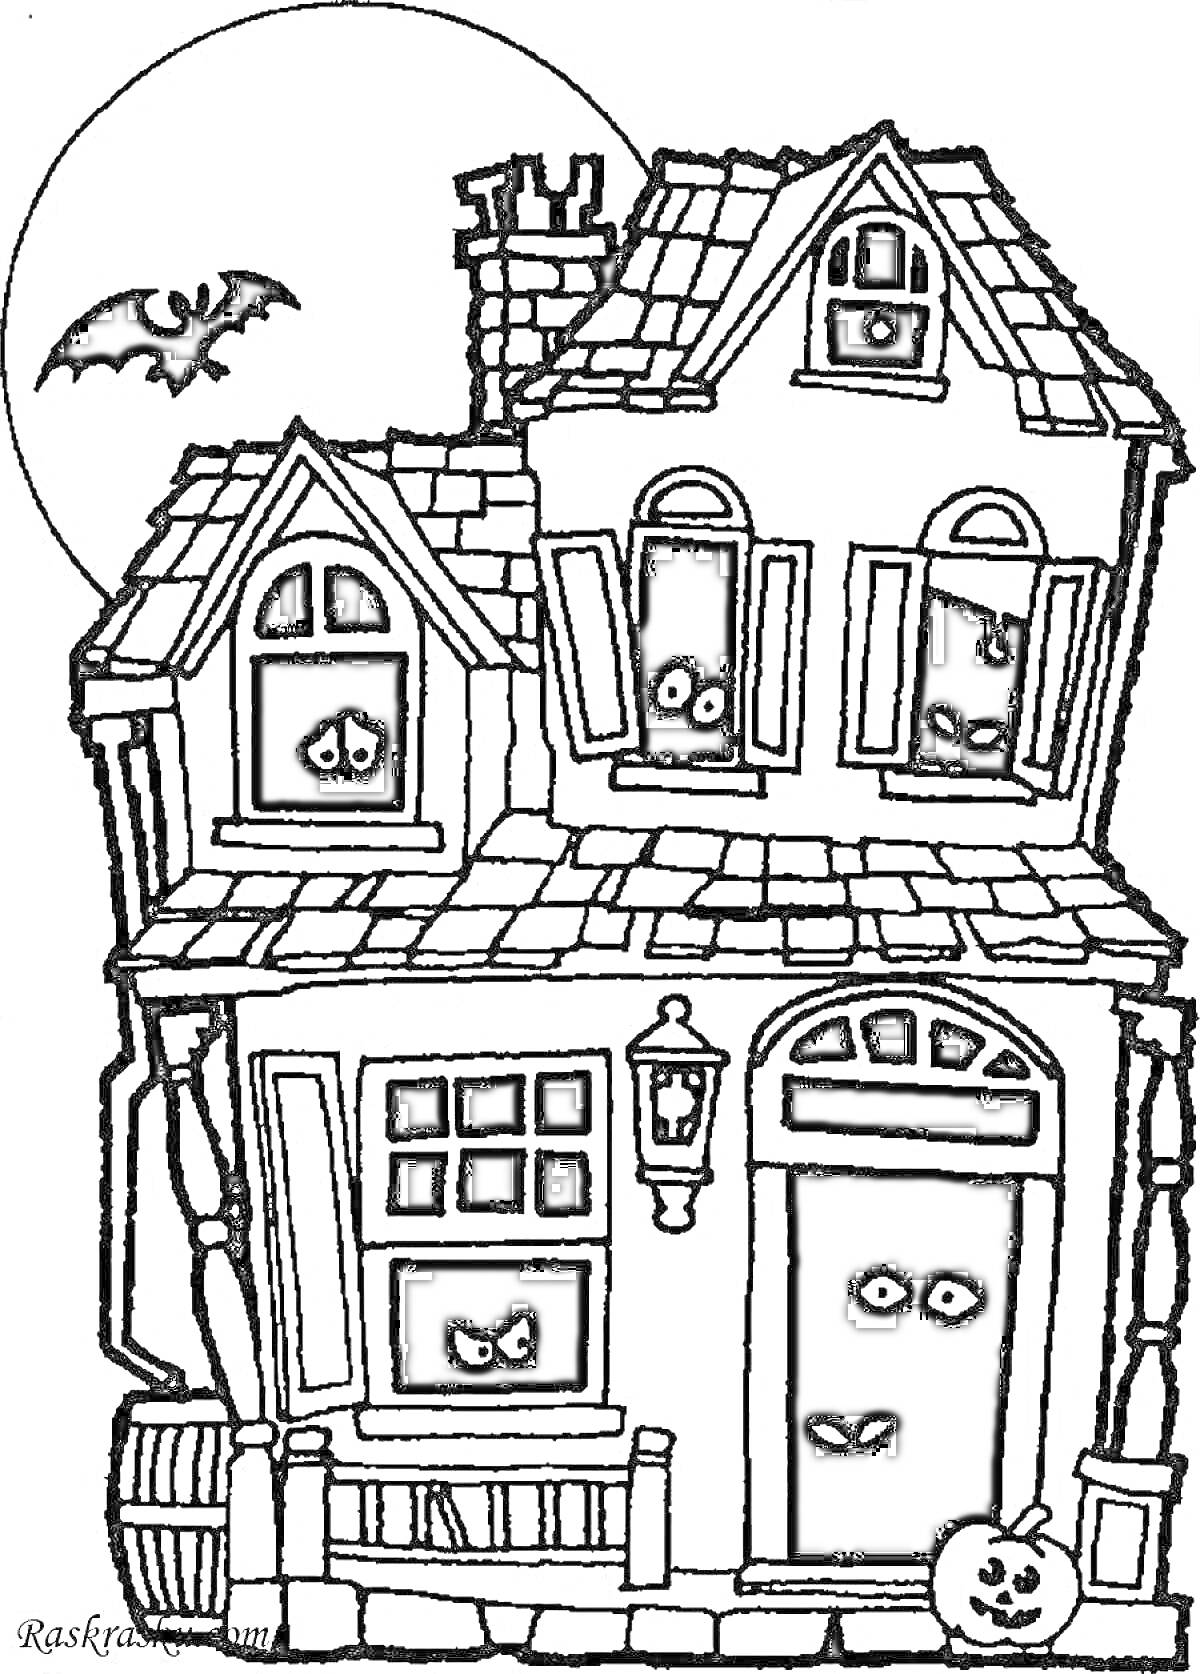 Раскраска Дом с привидениями, летающая летучая мышь, полная луна, тыква на крыльце, светящиеся глаза в окнах и двери, кривой дом с верандой и дымоходом